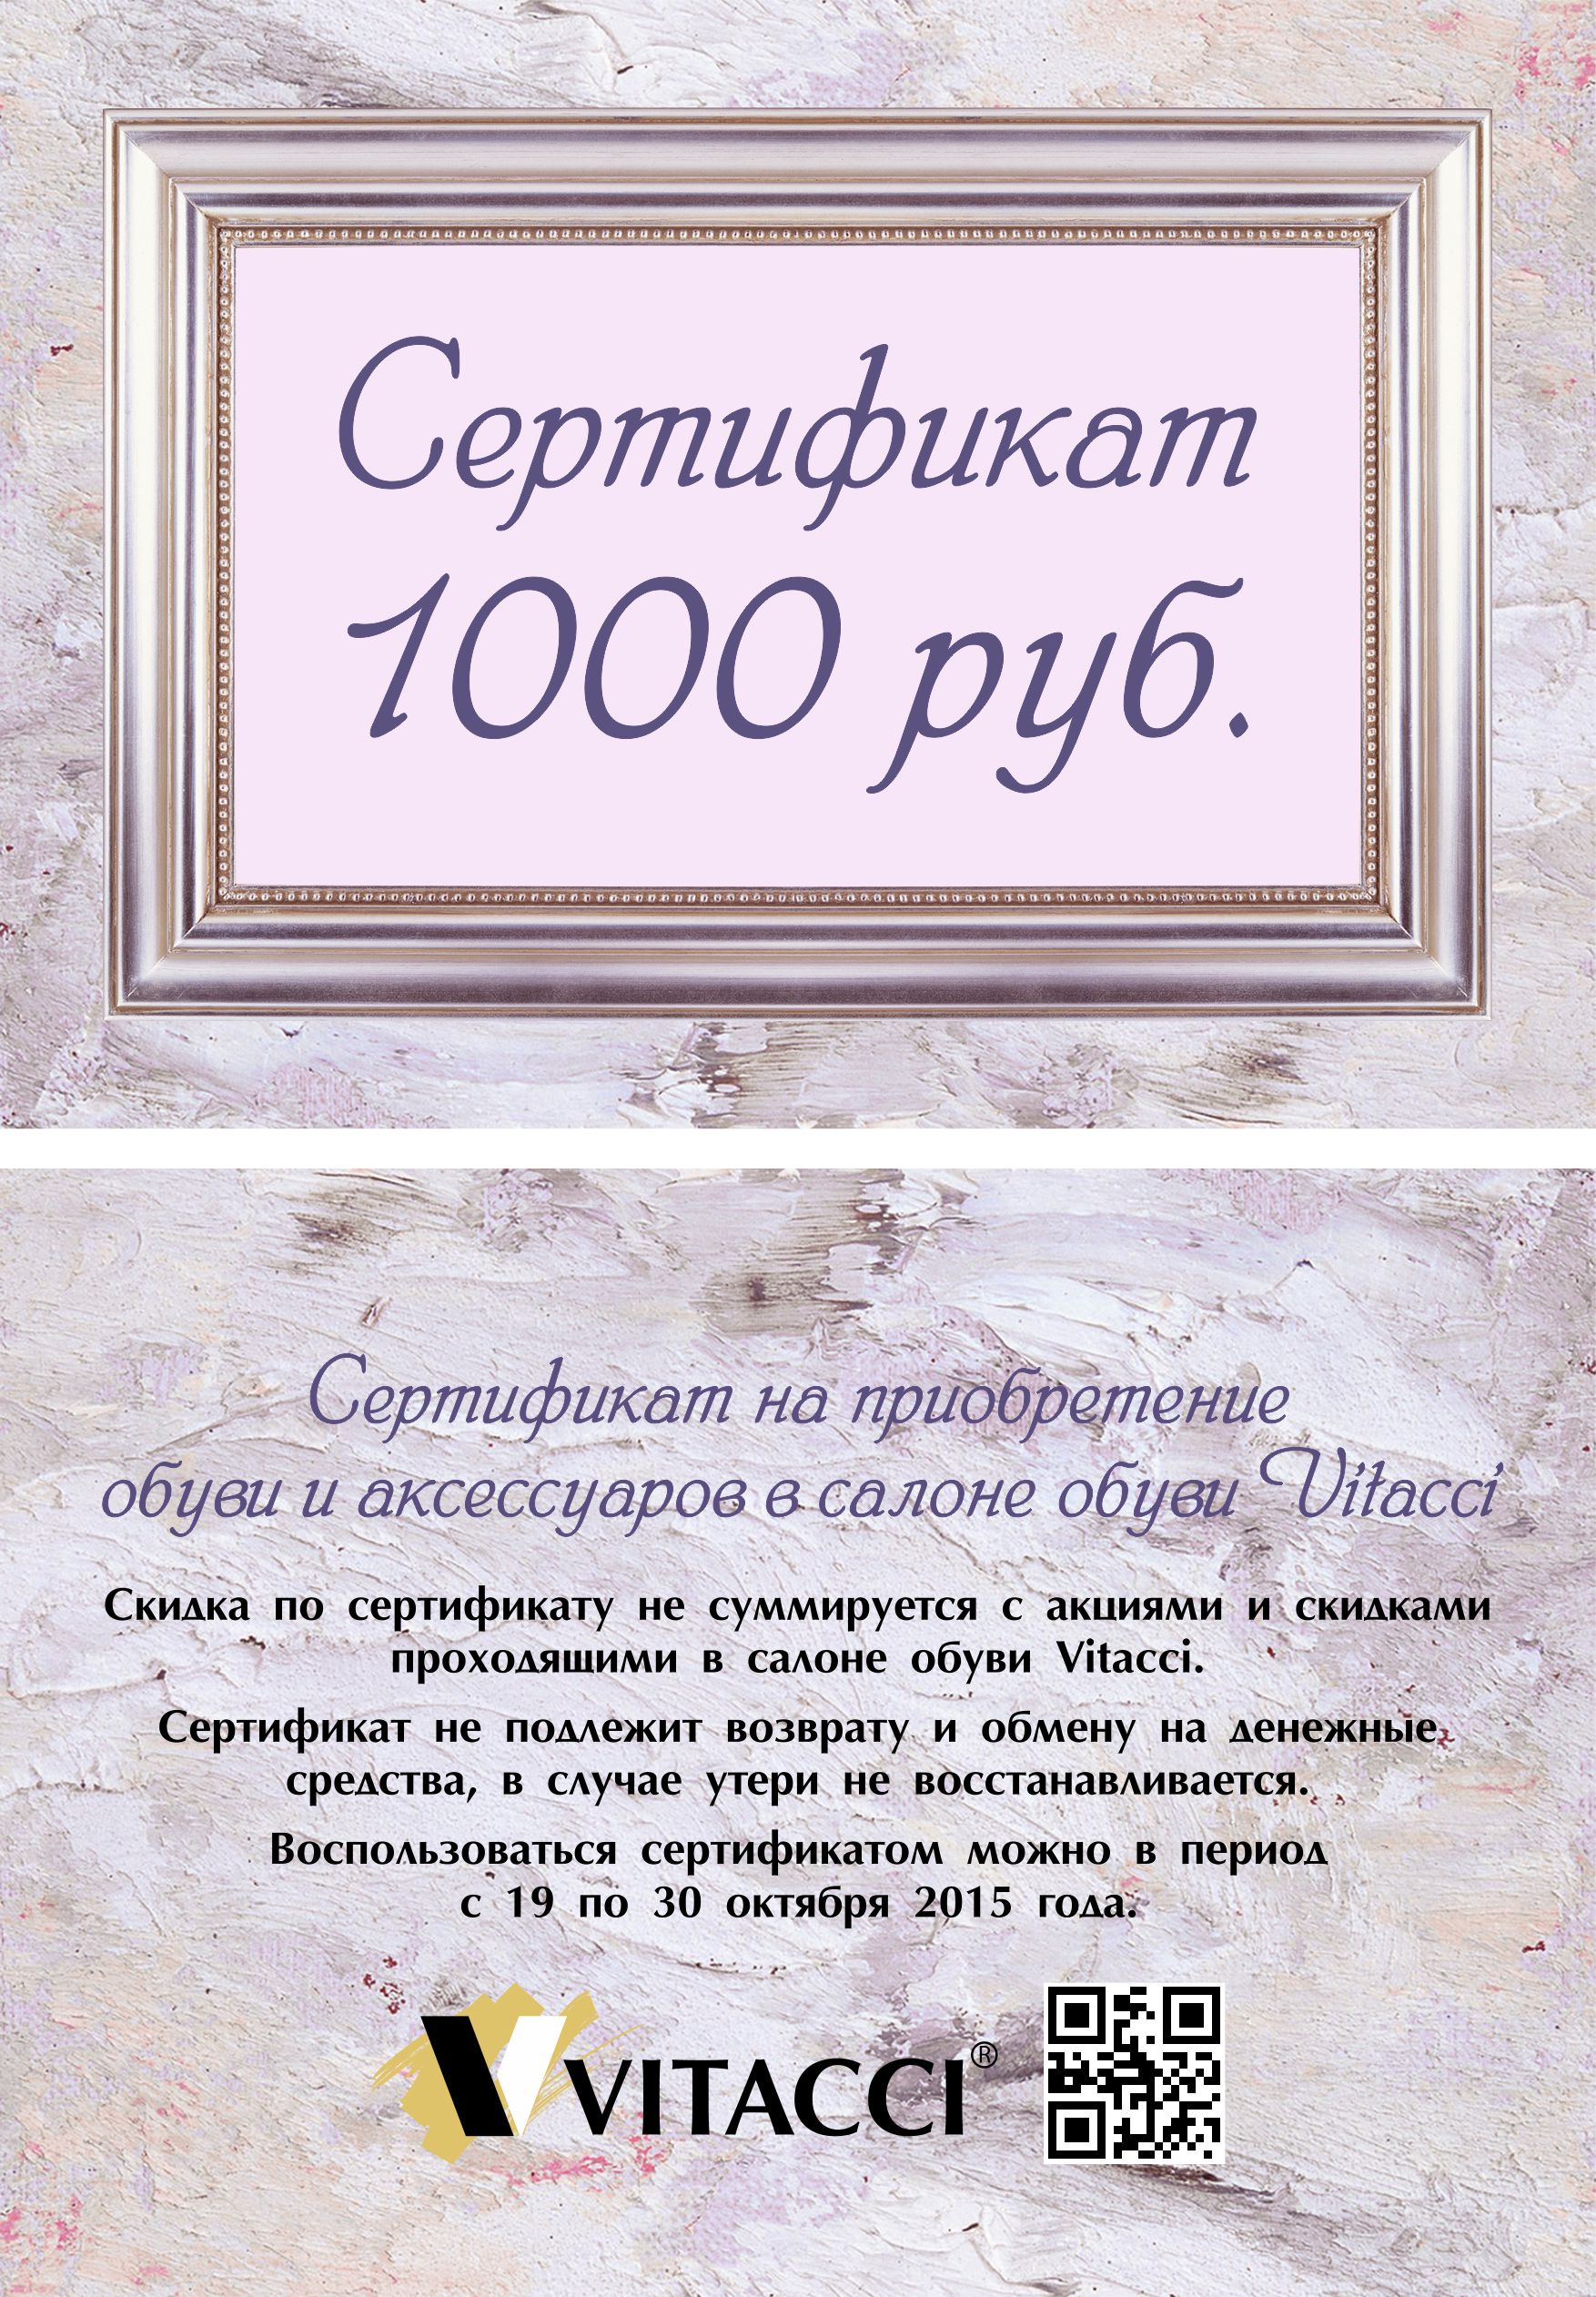 Всем покупателям дарим 1000 рублей